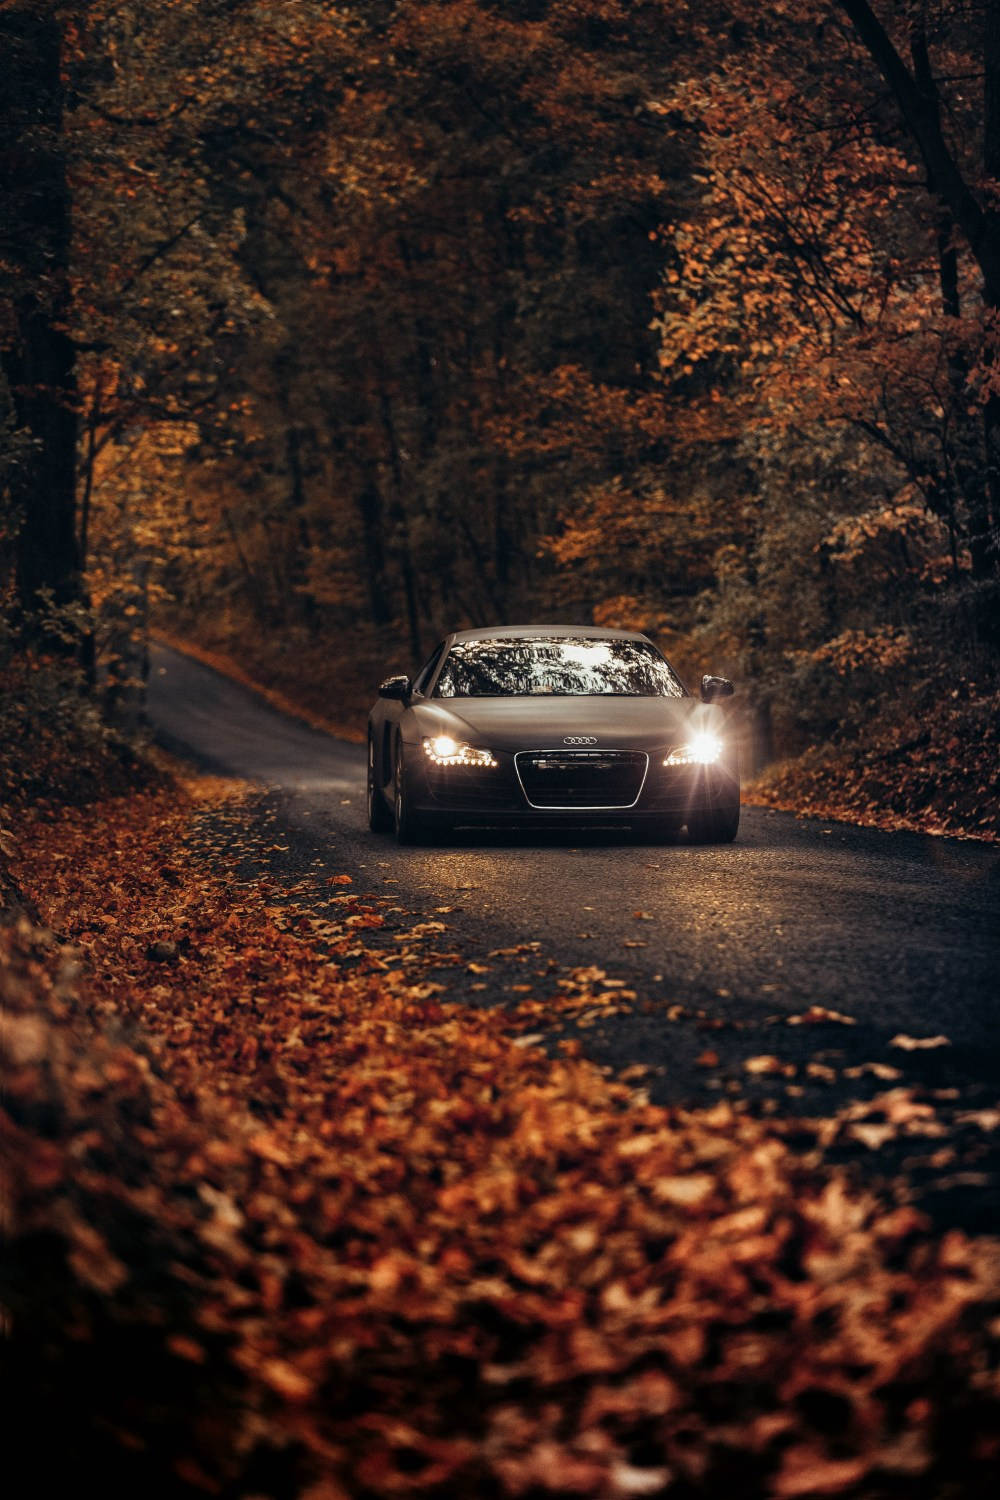 Khám phá những giá trị đẳng cấp và độc đáo từ hình nền Black Audi. Hãy xem những hình ảnh liên quan để cảm nhận chất lượng và sự quyến rũ của dòng xe sang trọng này.